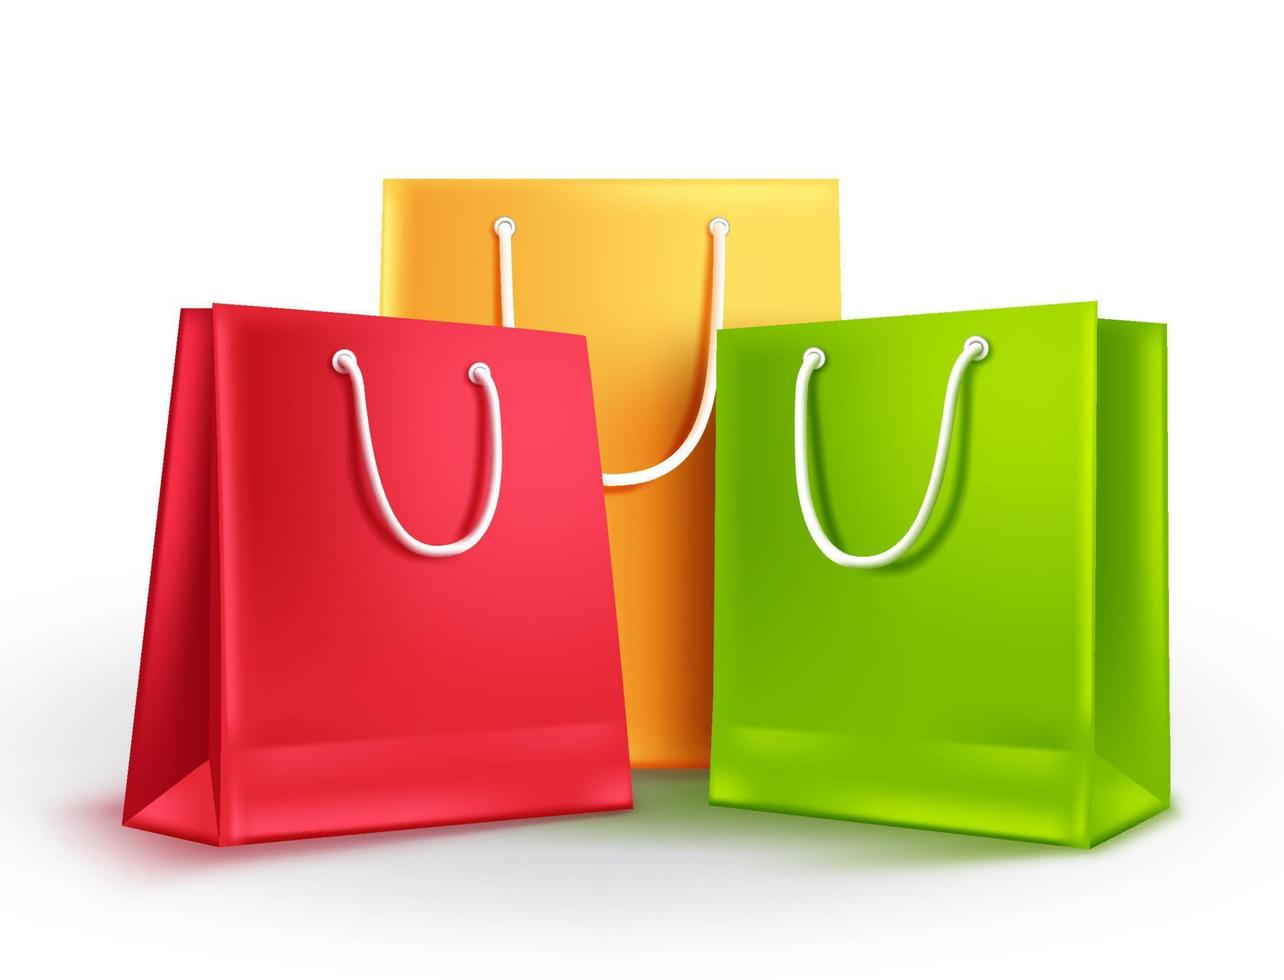 borse della spesa per illustrazione vettoriale di moda e abbigliamento. gruppo colorato di sacchetti di carta vuoti isolati in bianco per la promozione dello shopping e delle vendite.